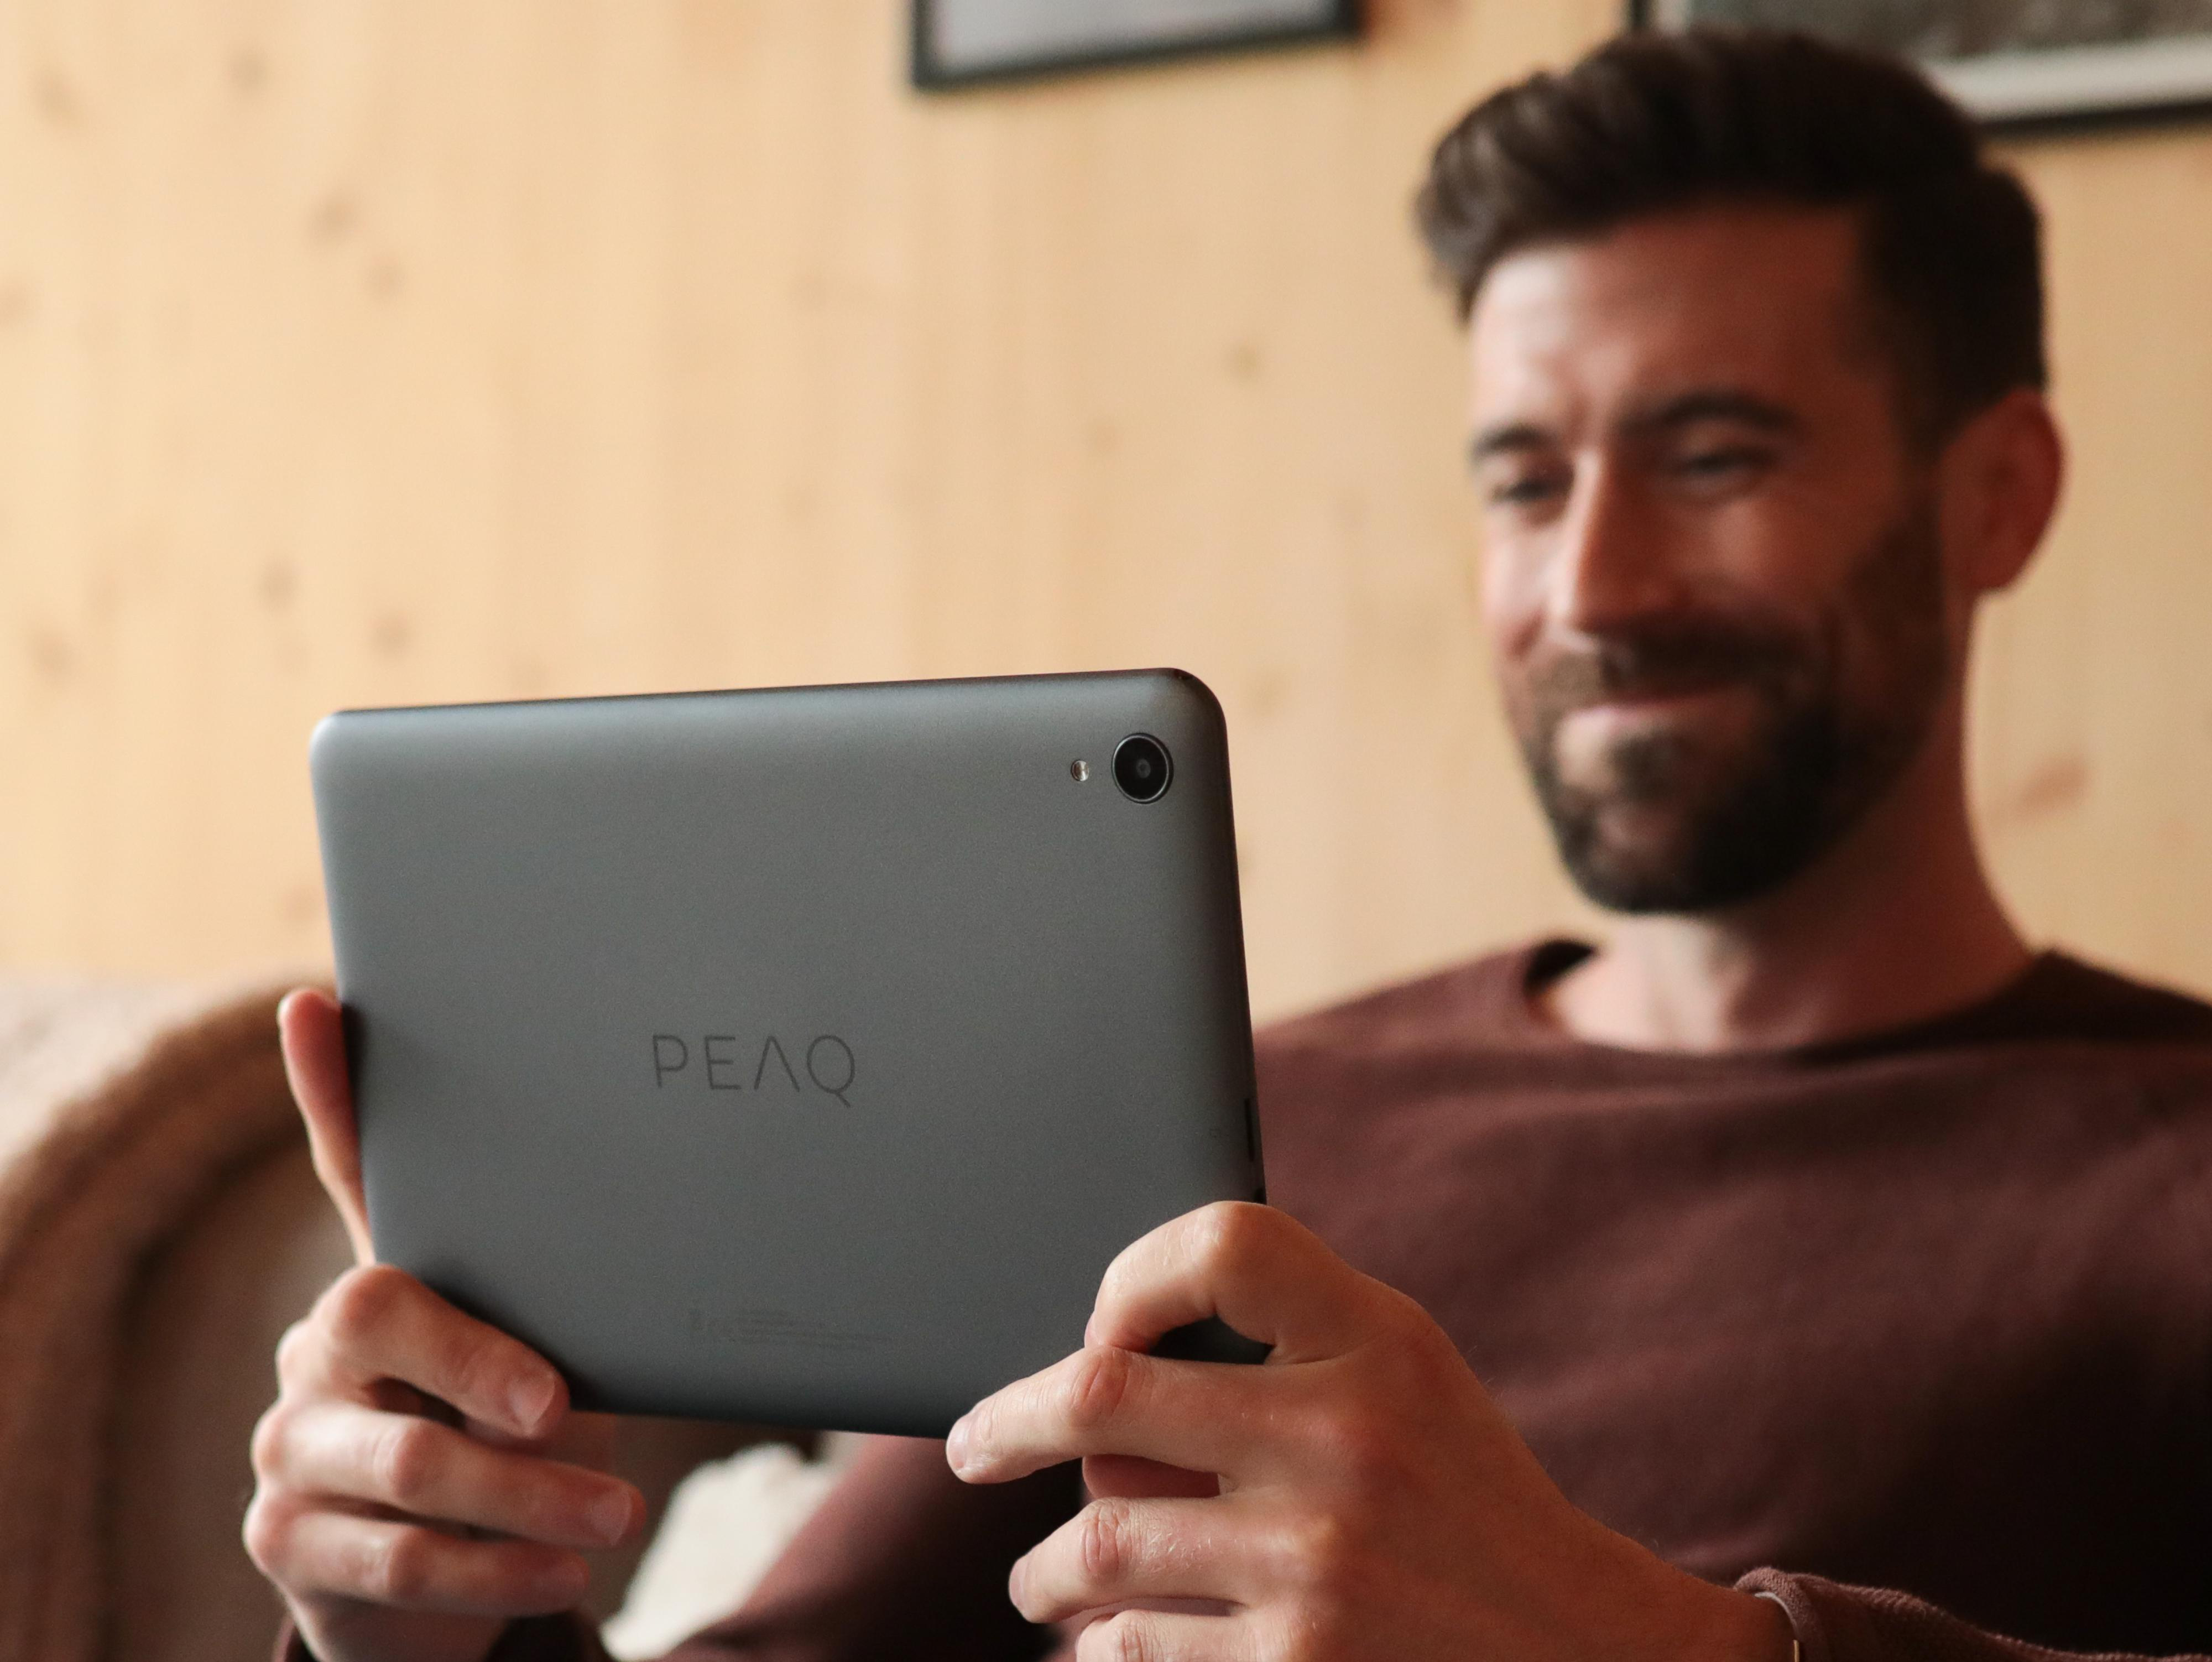 PEAQ PET 1008-F464E, 10 GB, Grau Zoll, Tablet, 64